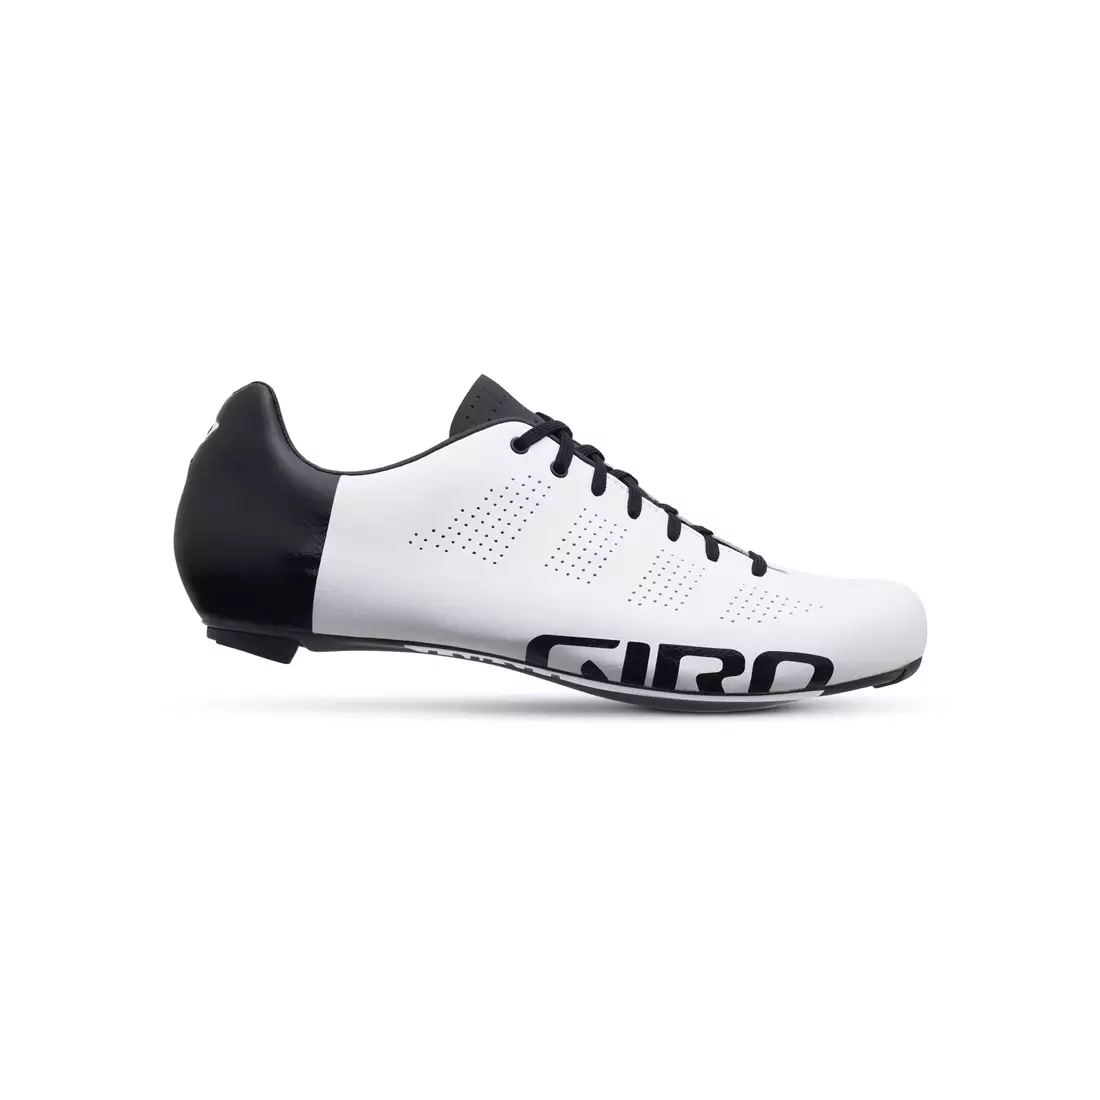 Pánská cyklistická obuv GIRO EMPIRE ACC Černý a bílý